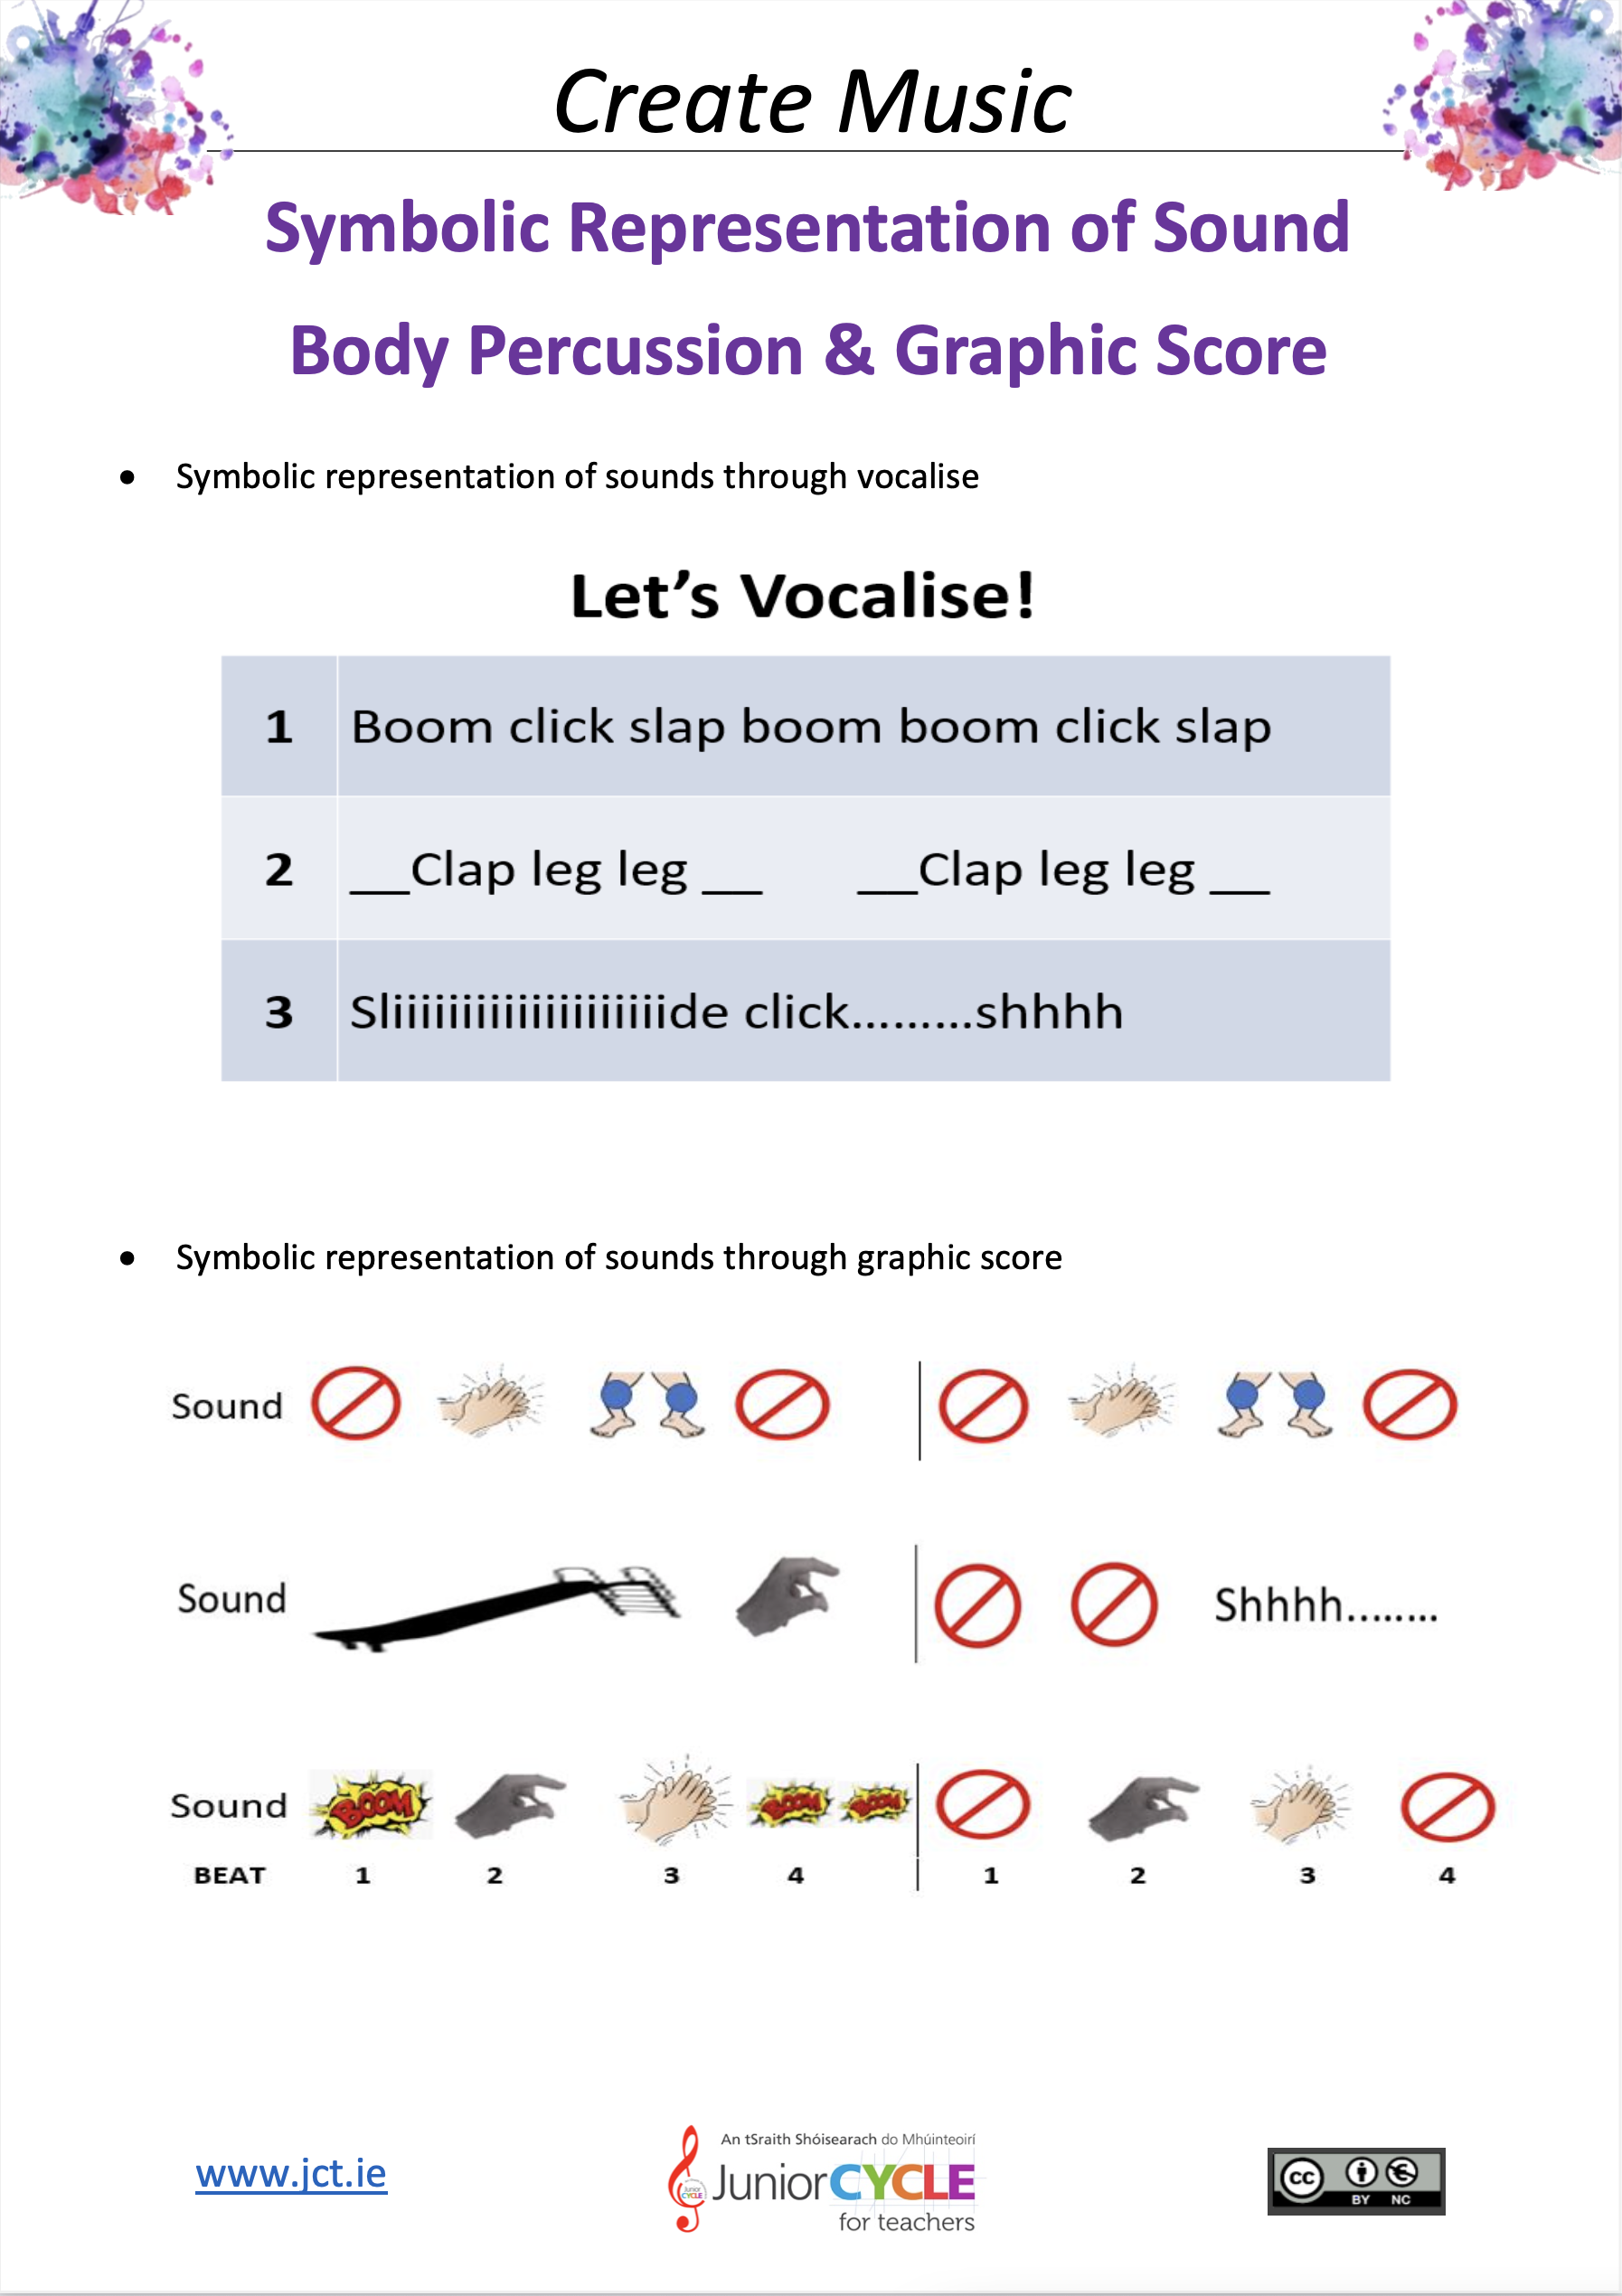 Symbolic Representation of Sound - Body Percussion and Graphic Scores